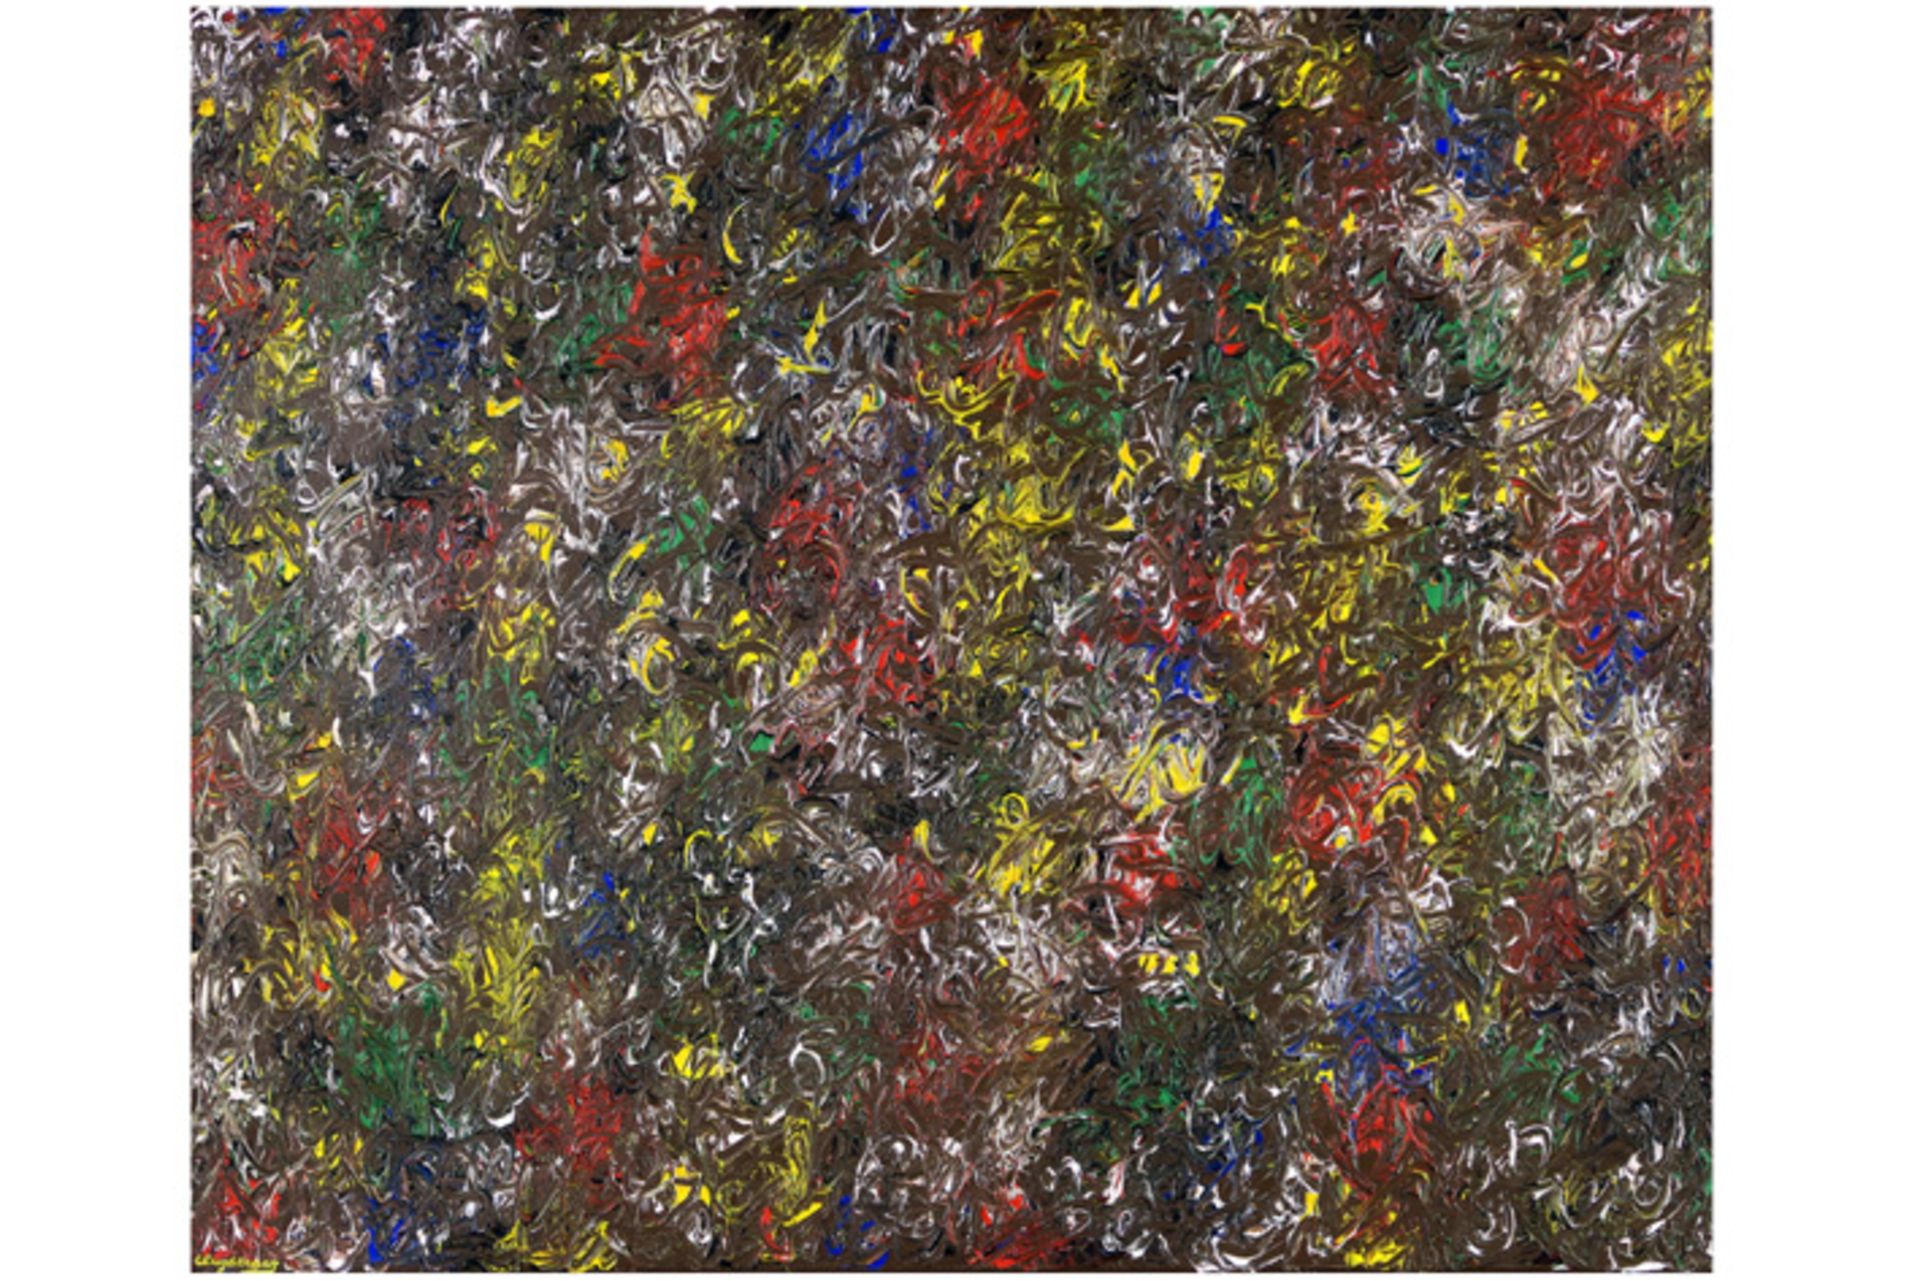 20th Cent. Belgian abstract oil on canvas - signed John Cluysenaar||CLUYSENAAR JOHN (1899 - 1986) ol